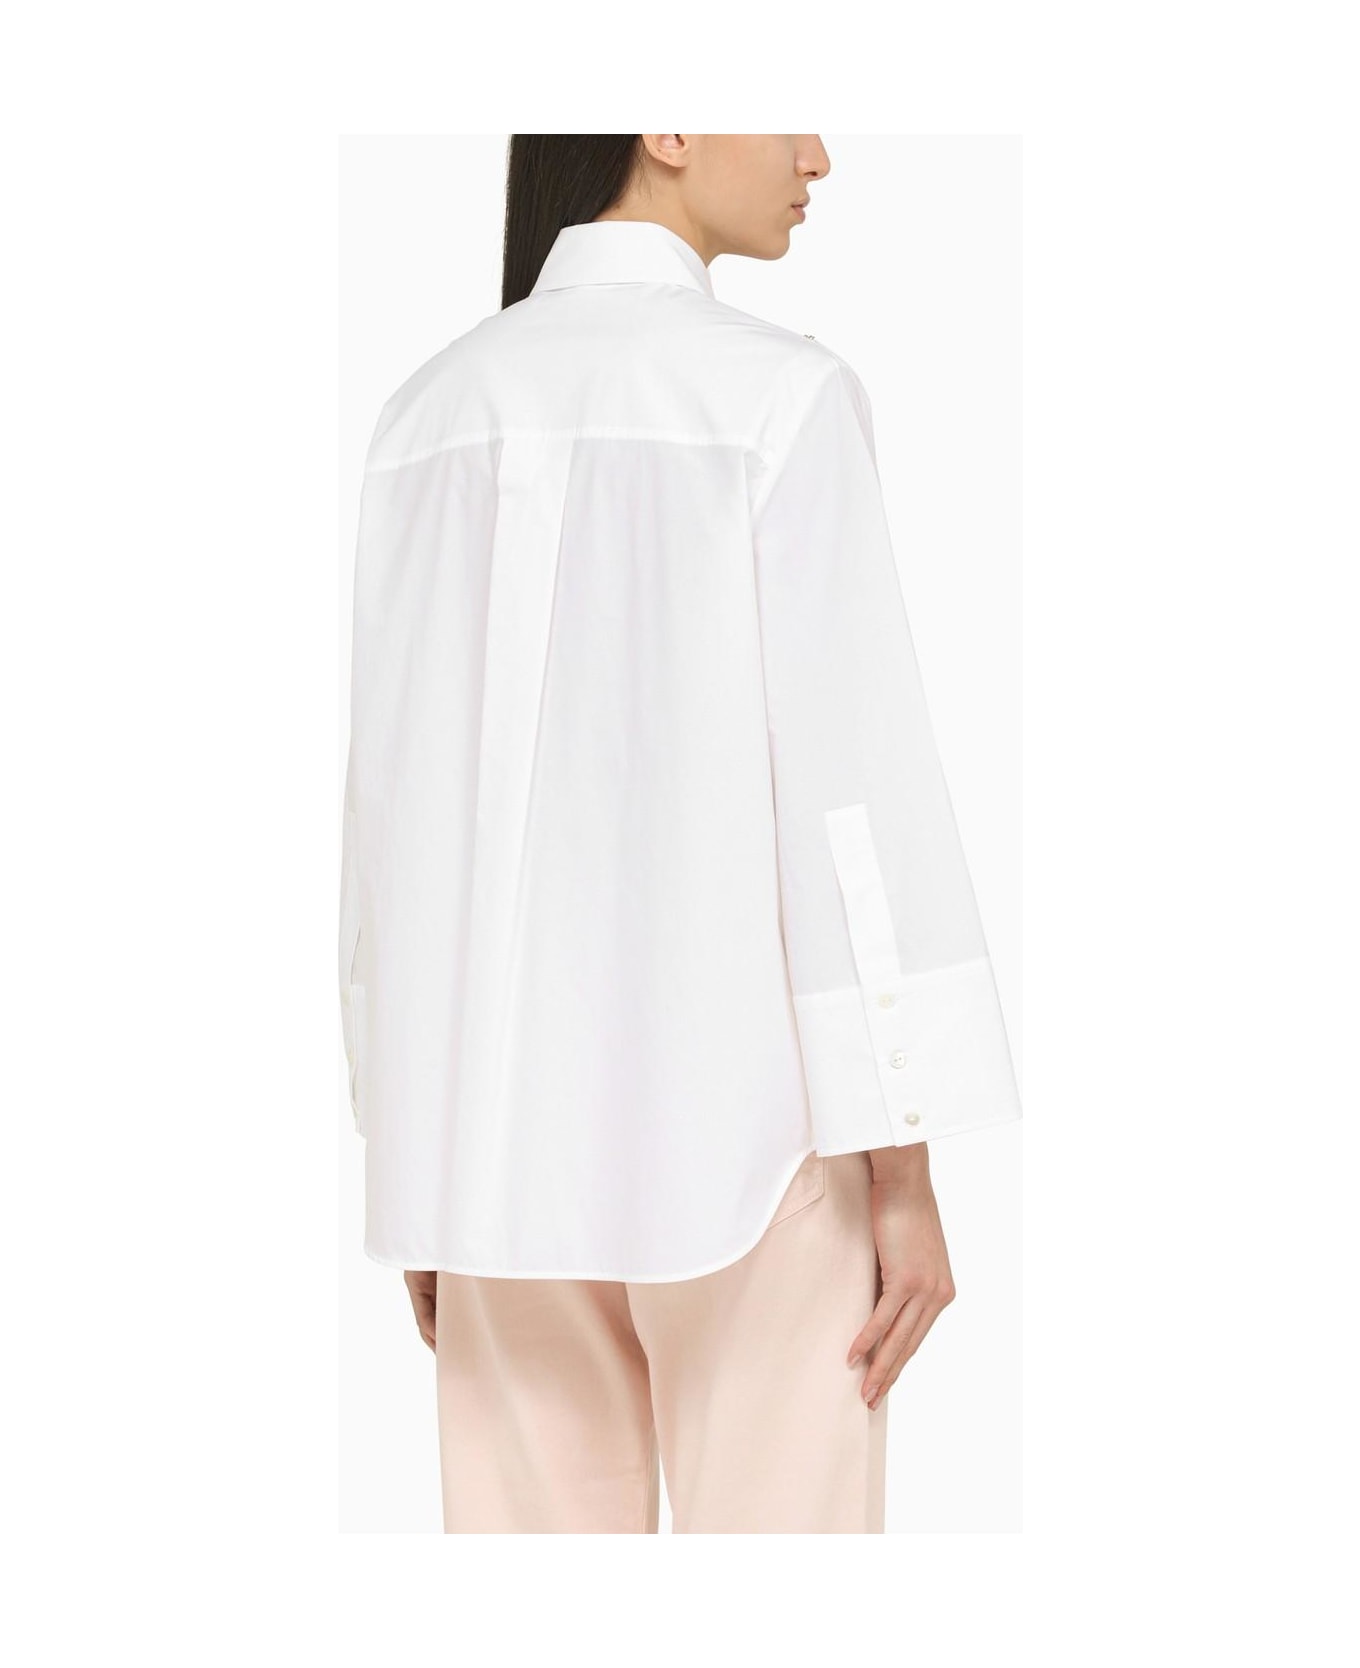 Parosh Embellished Shirt - White シャツ